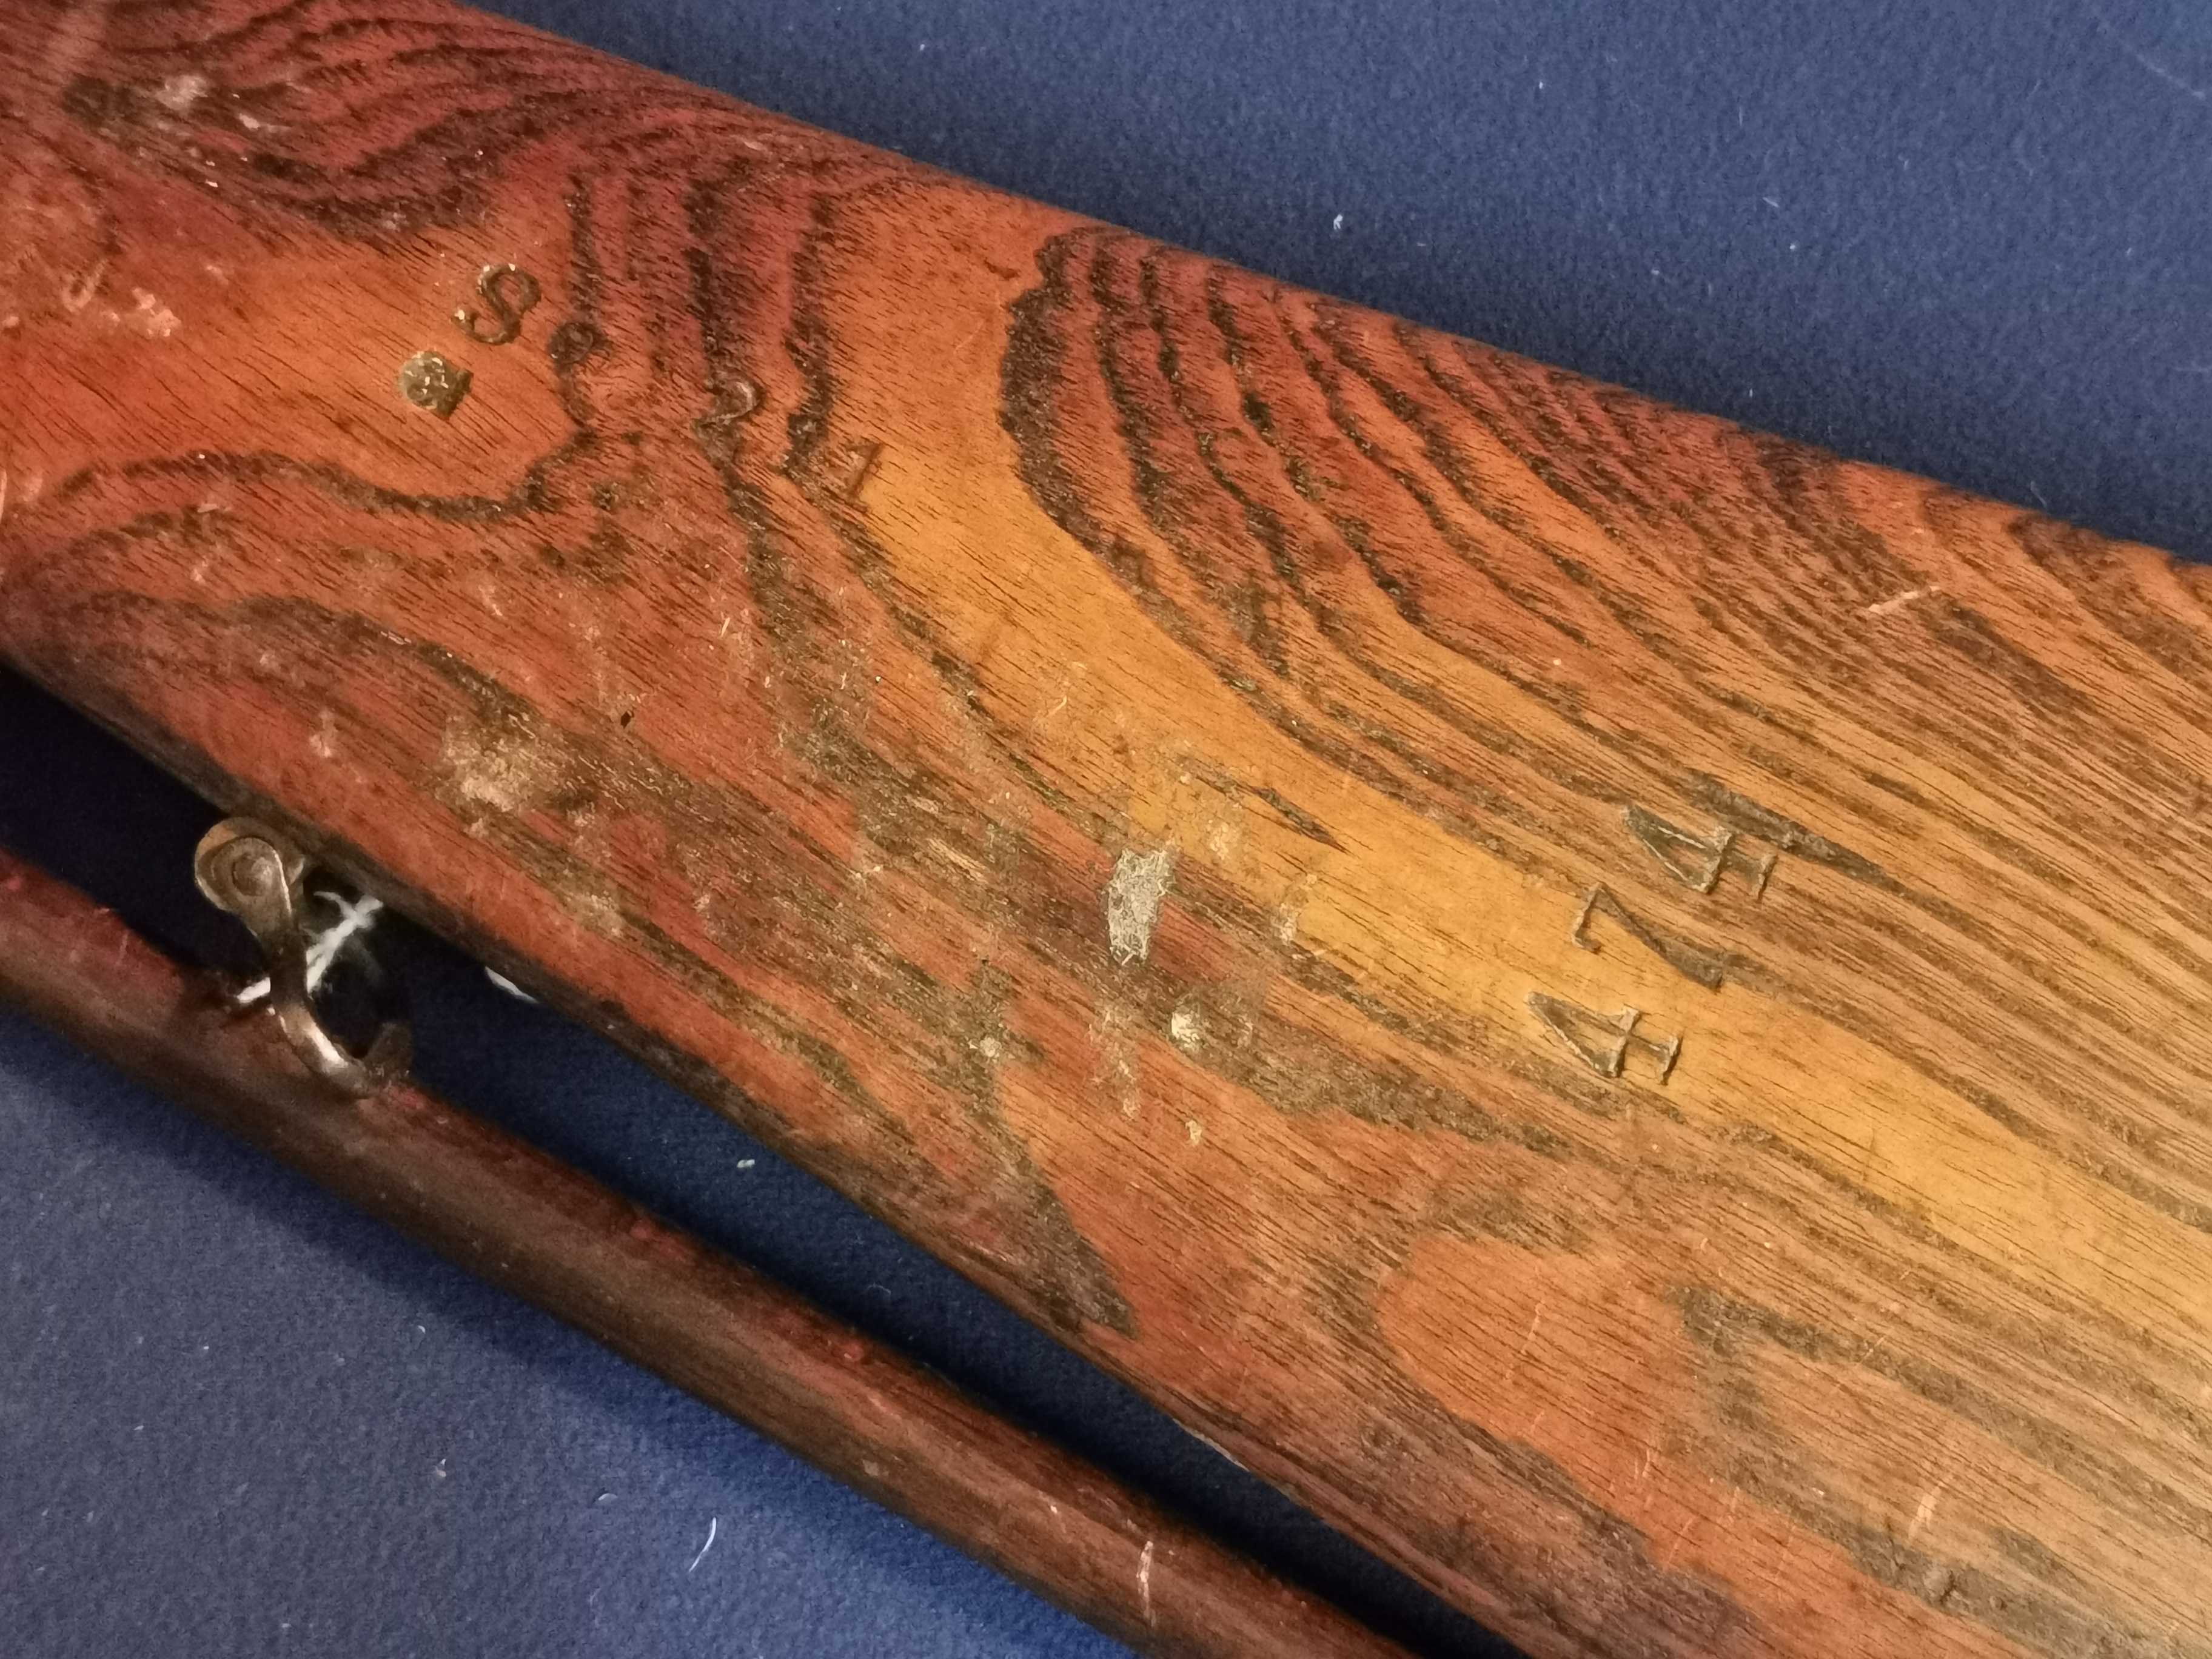 Antique Muzzleloader Rifle w/ramrod - 130cm long - Image 2 of 5